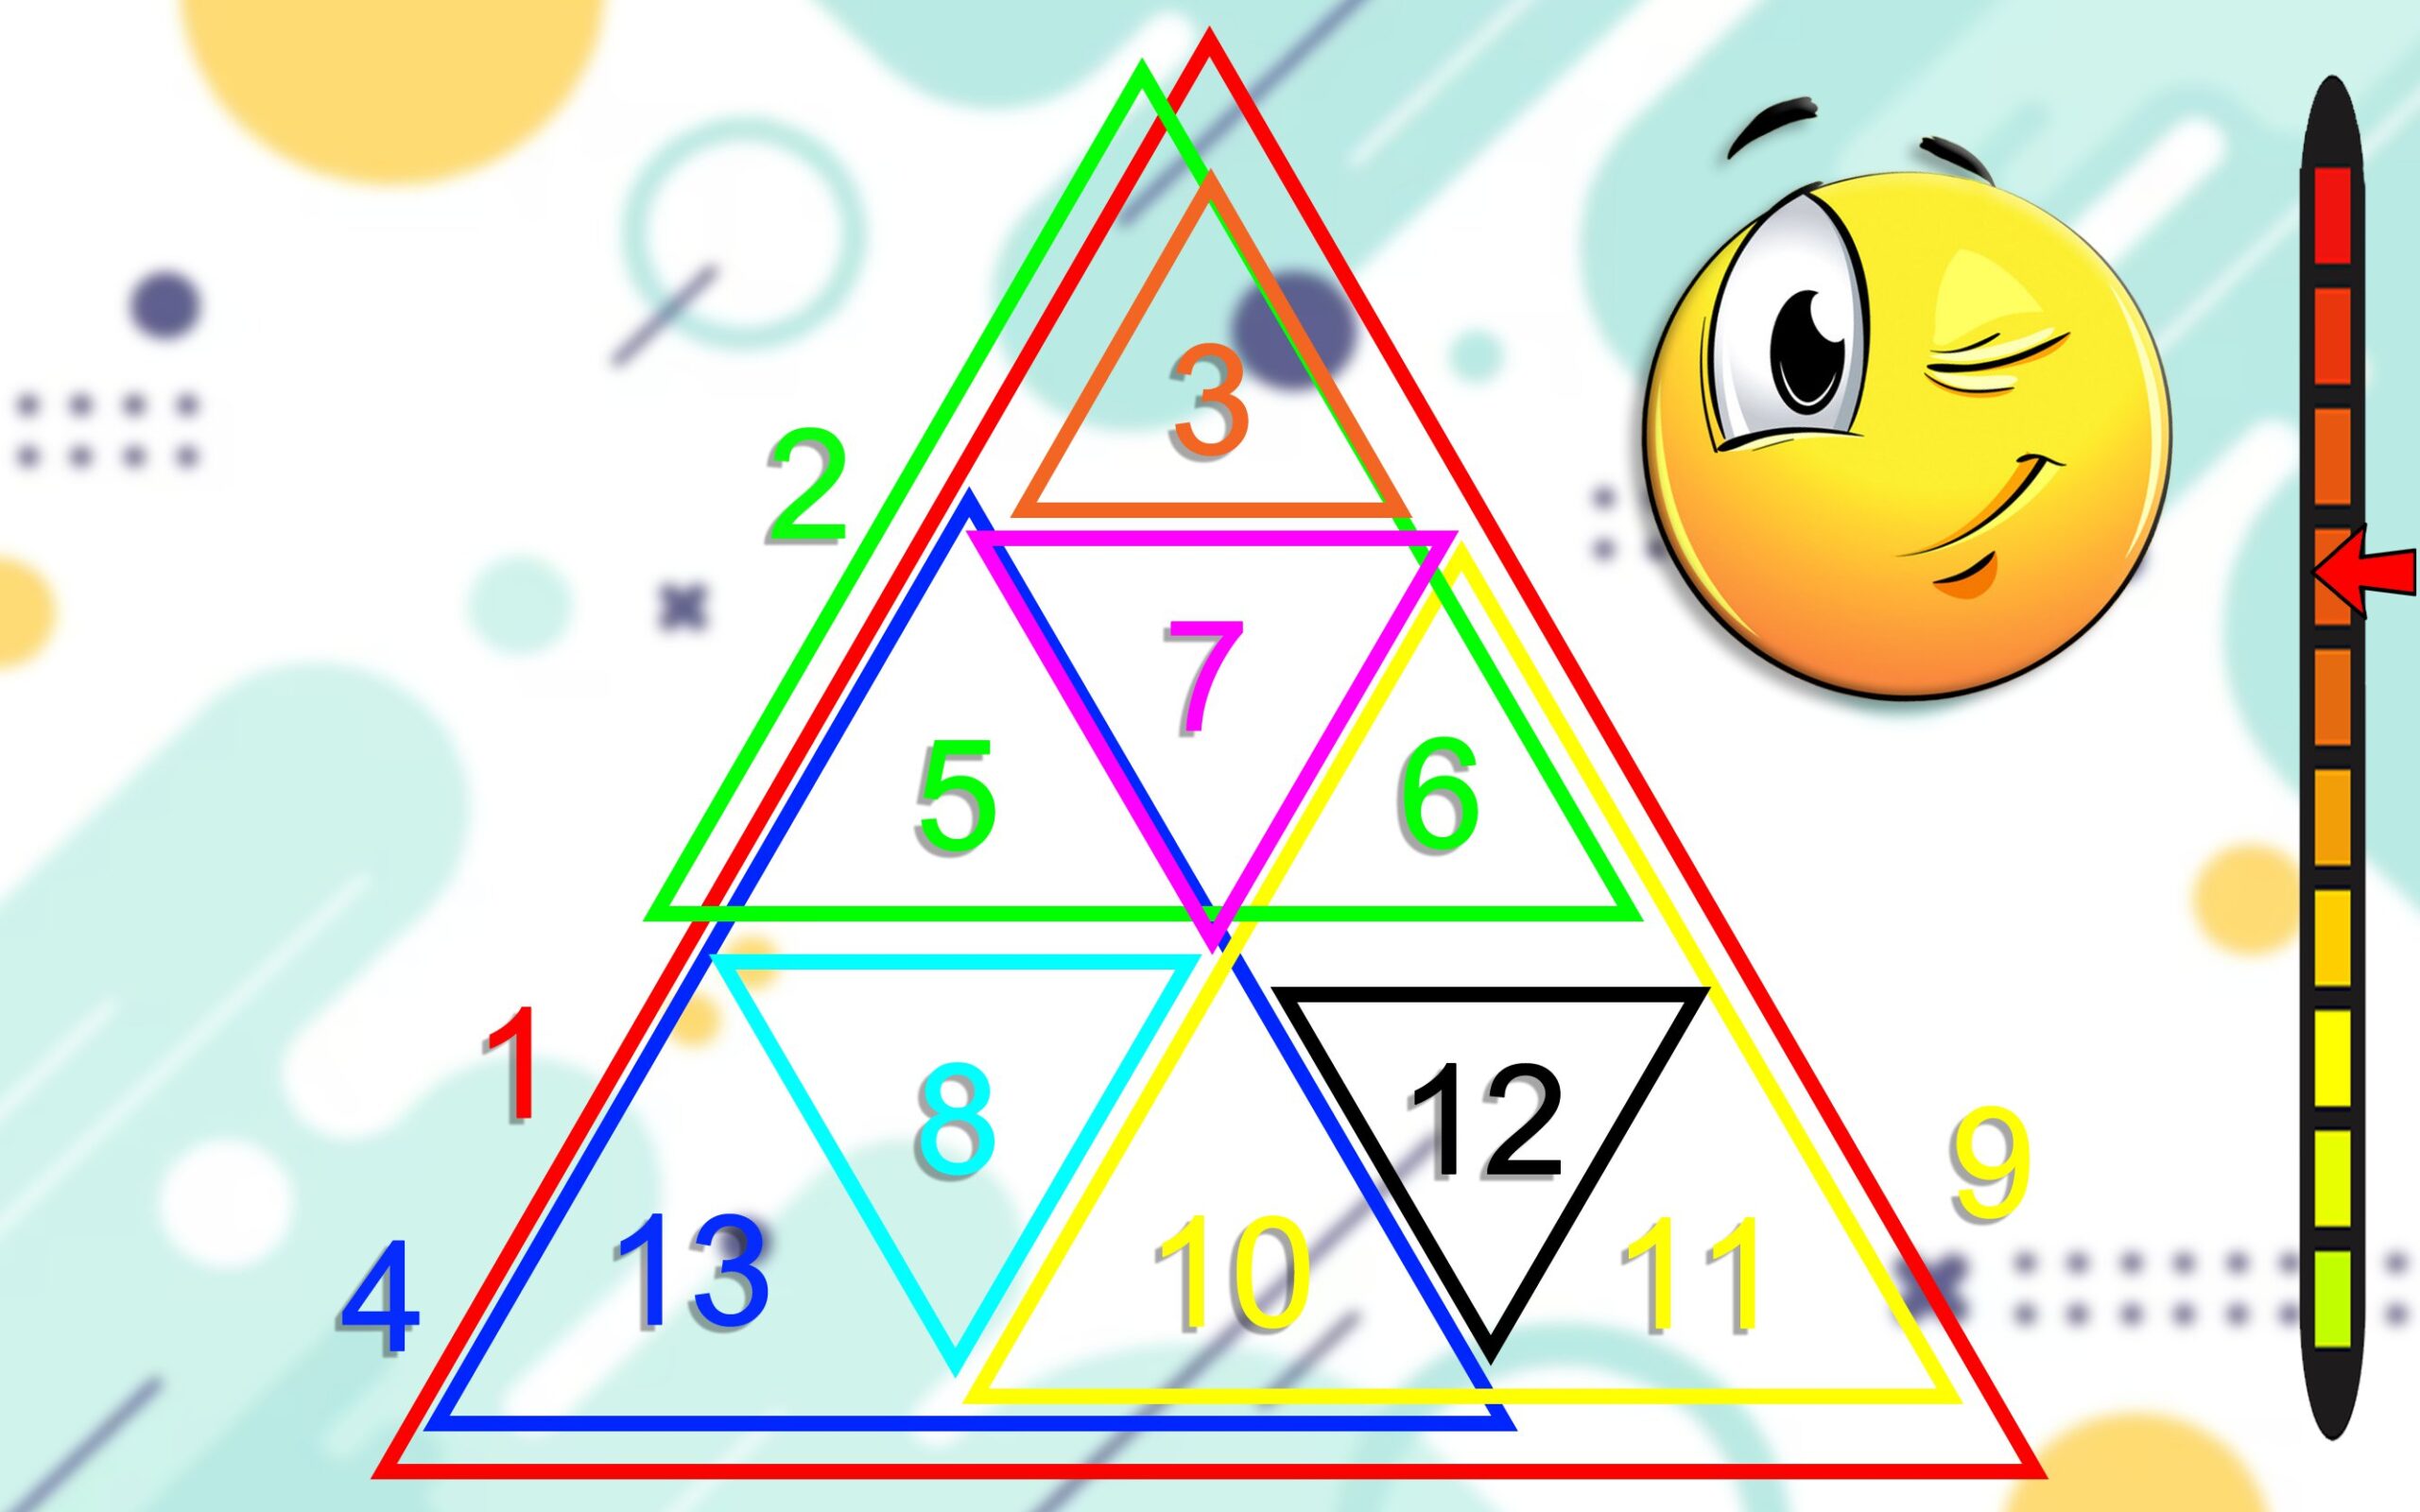 Triangle nombre - s